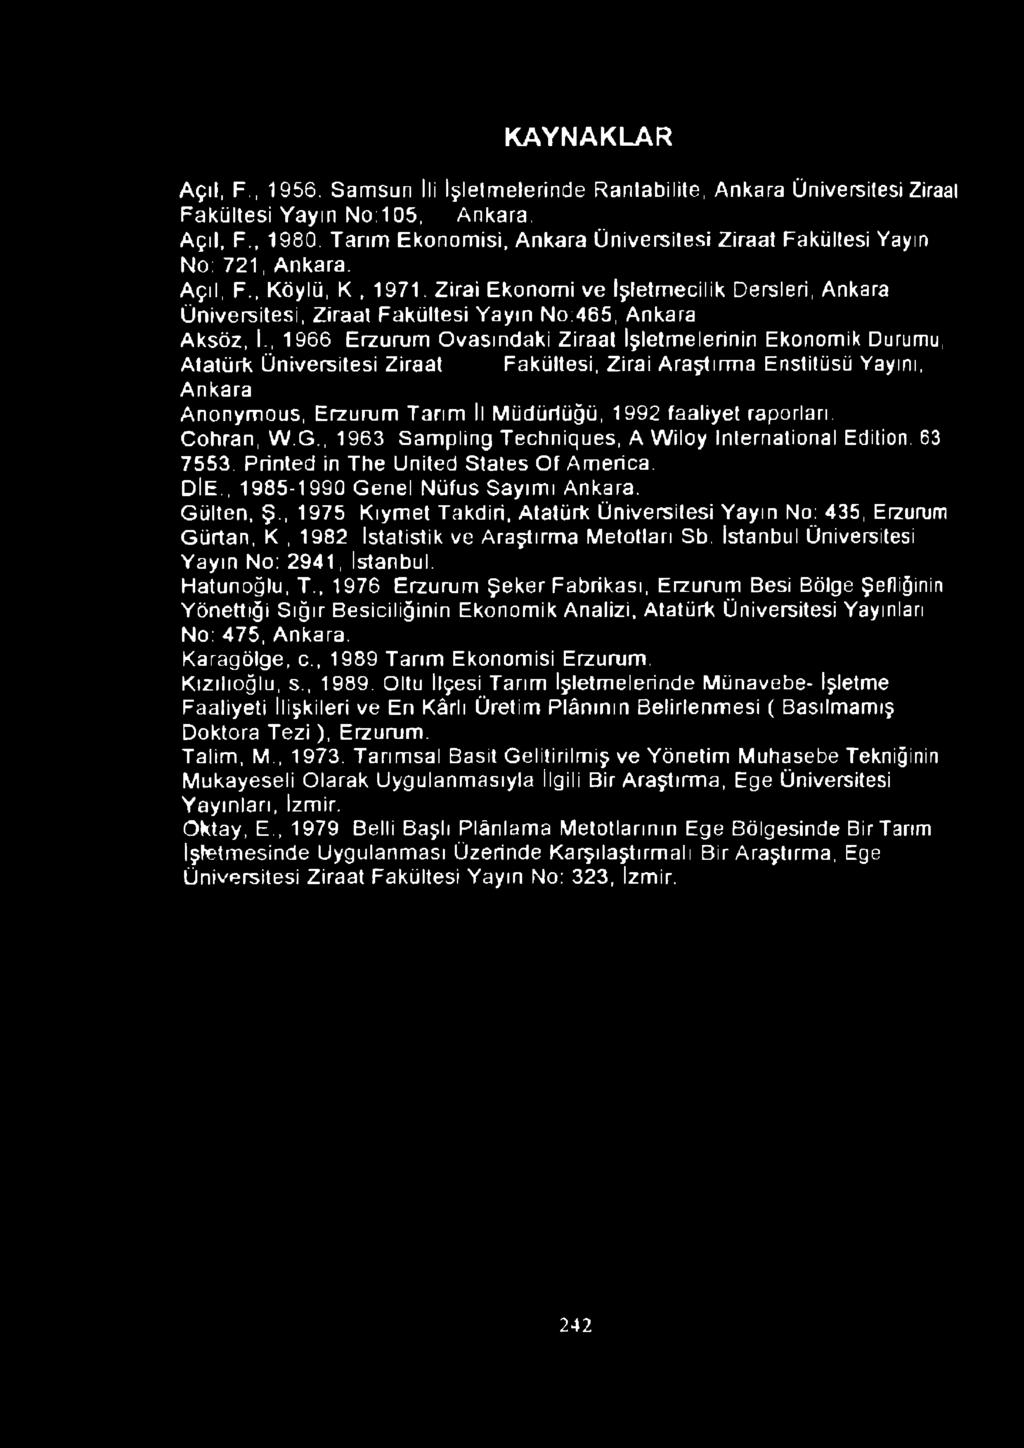 Zirai Ekonomi ve İşletmecilik Dersleri, Ankara Üniversitesi, Ziraat Fakültesi Yayın No:465, Ankara Aksöz, I-, 1966 Erzurum Ovasındaki Ziraat İşletmelerinin Ekonomik Durumu, Atatürk Üniversitesi